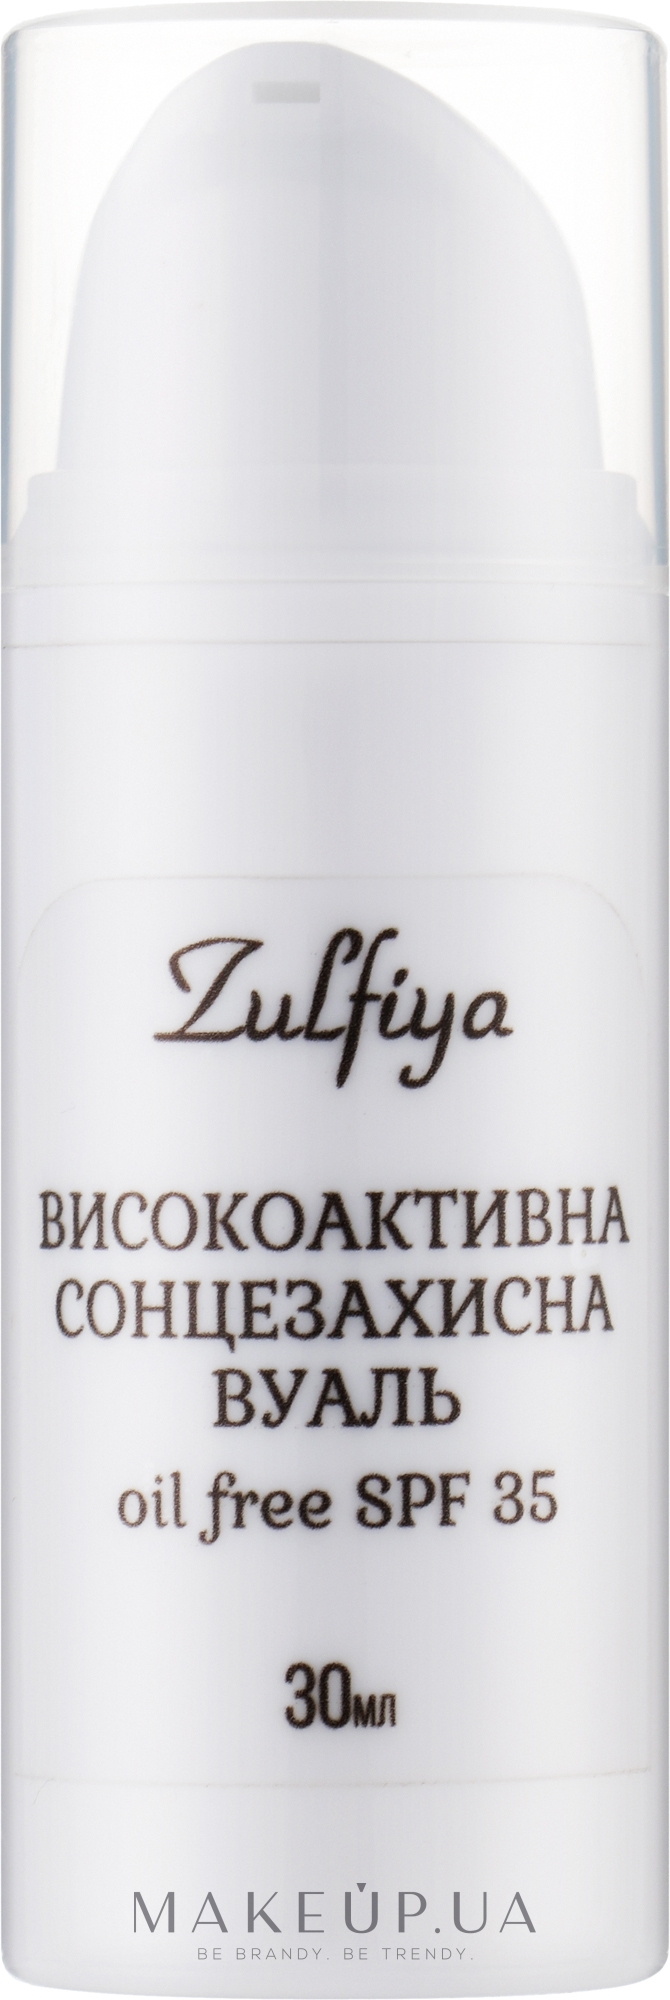 Високоактивна сонцезахисна вуаль для обличчя Oil Free (SPF 35) - Zulfiya — фото 30g